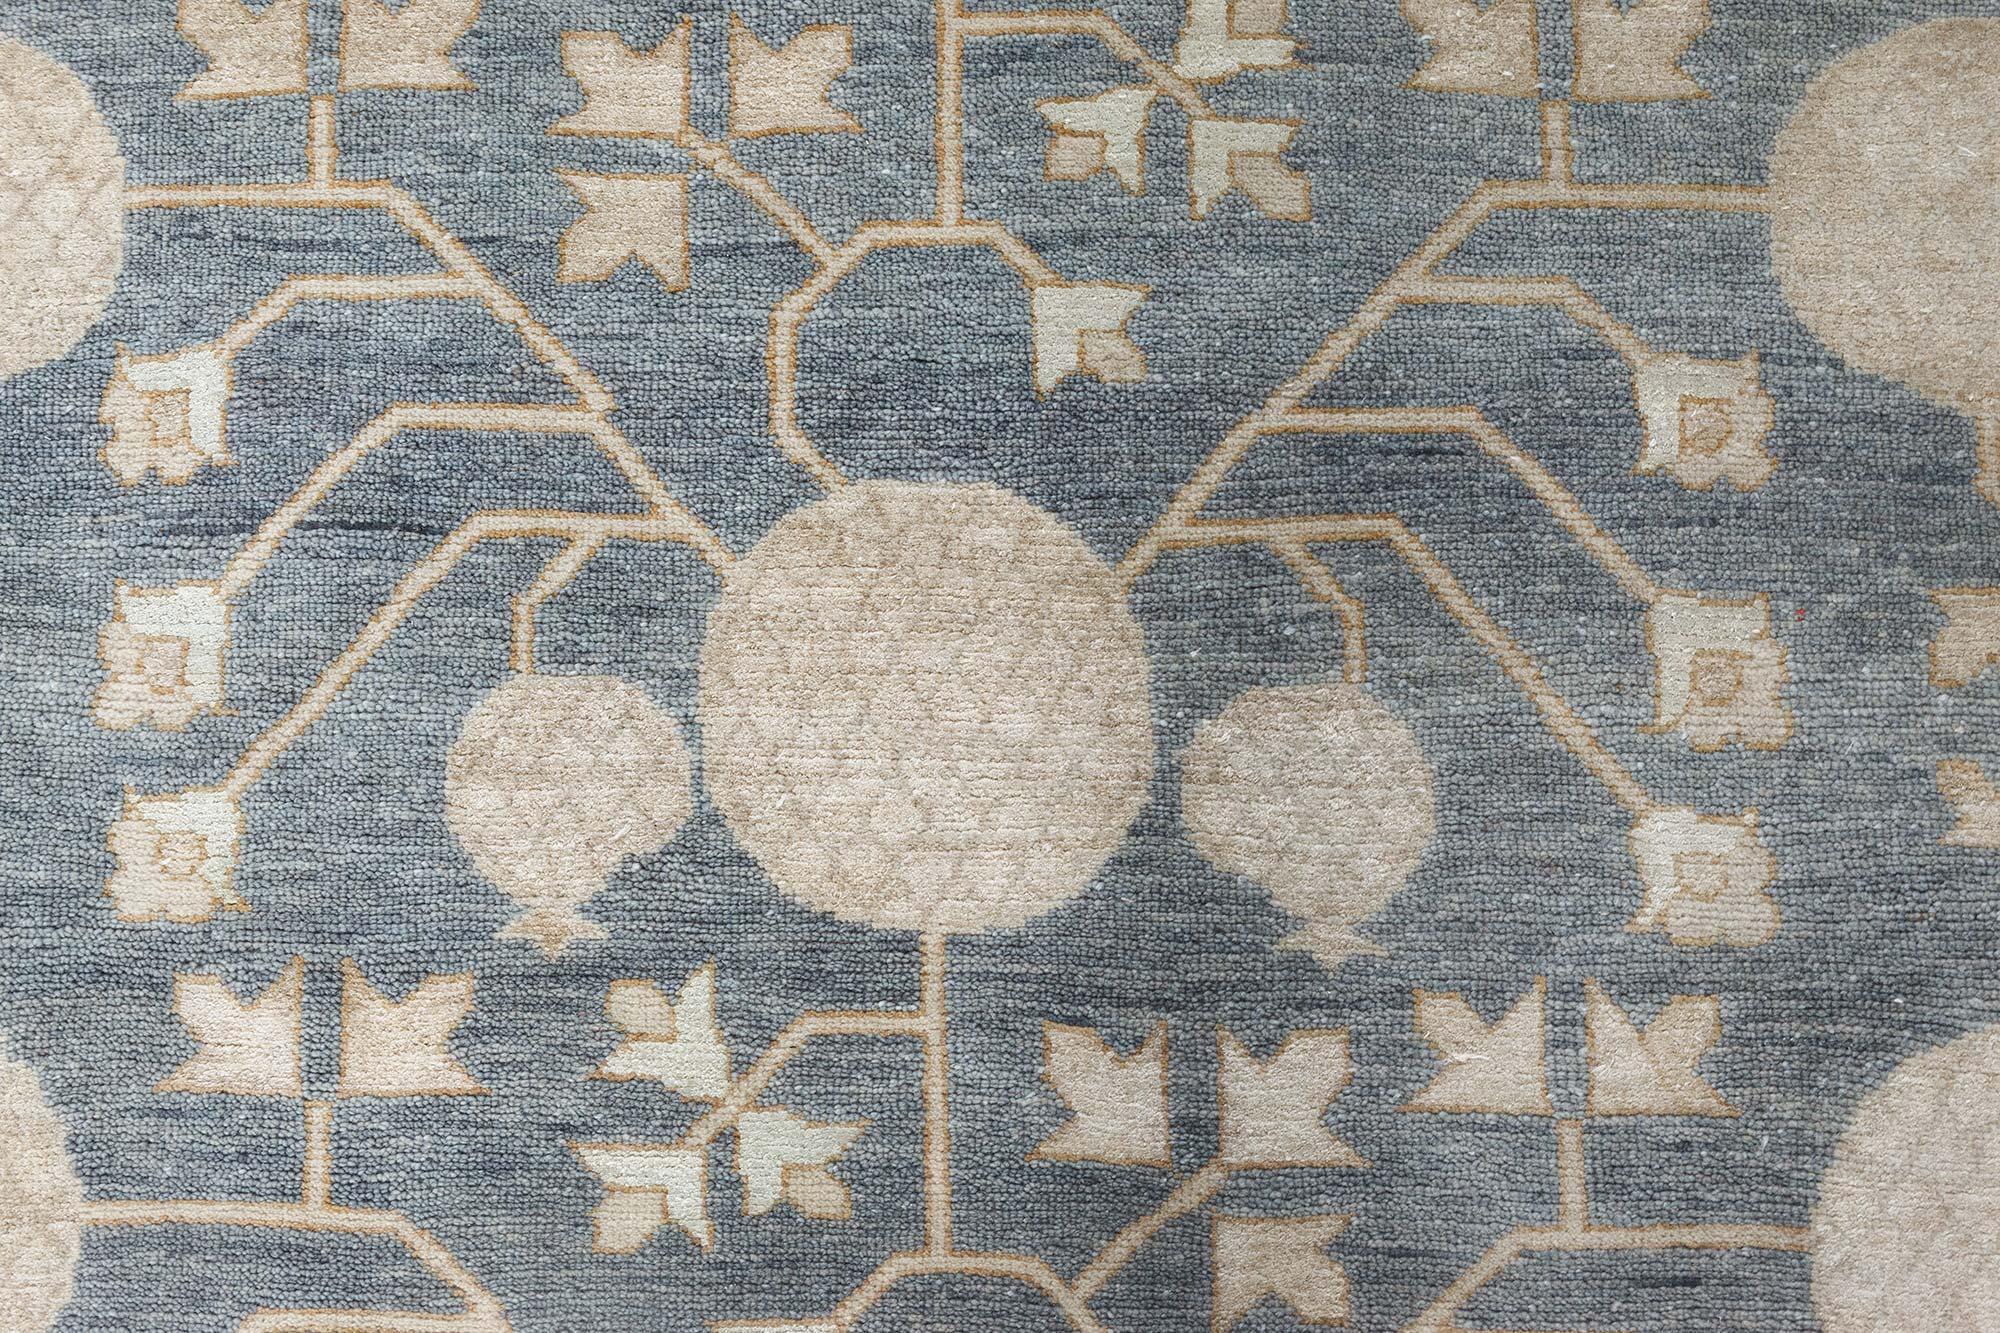 Moderner handgefertigter Teppich im Samarkand-Stil von Doris Leslie Blau.
Größe: 9'9